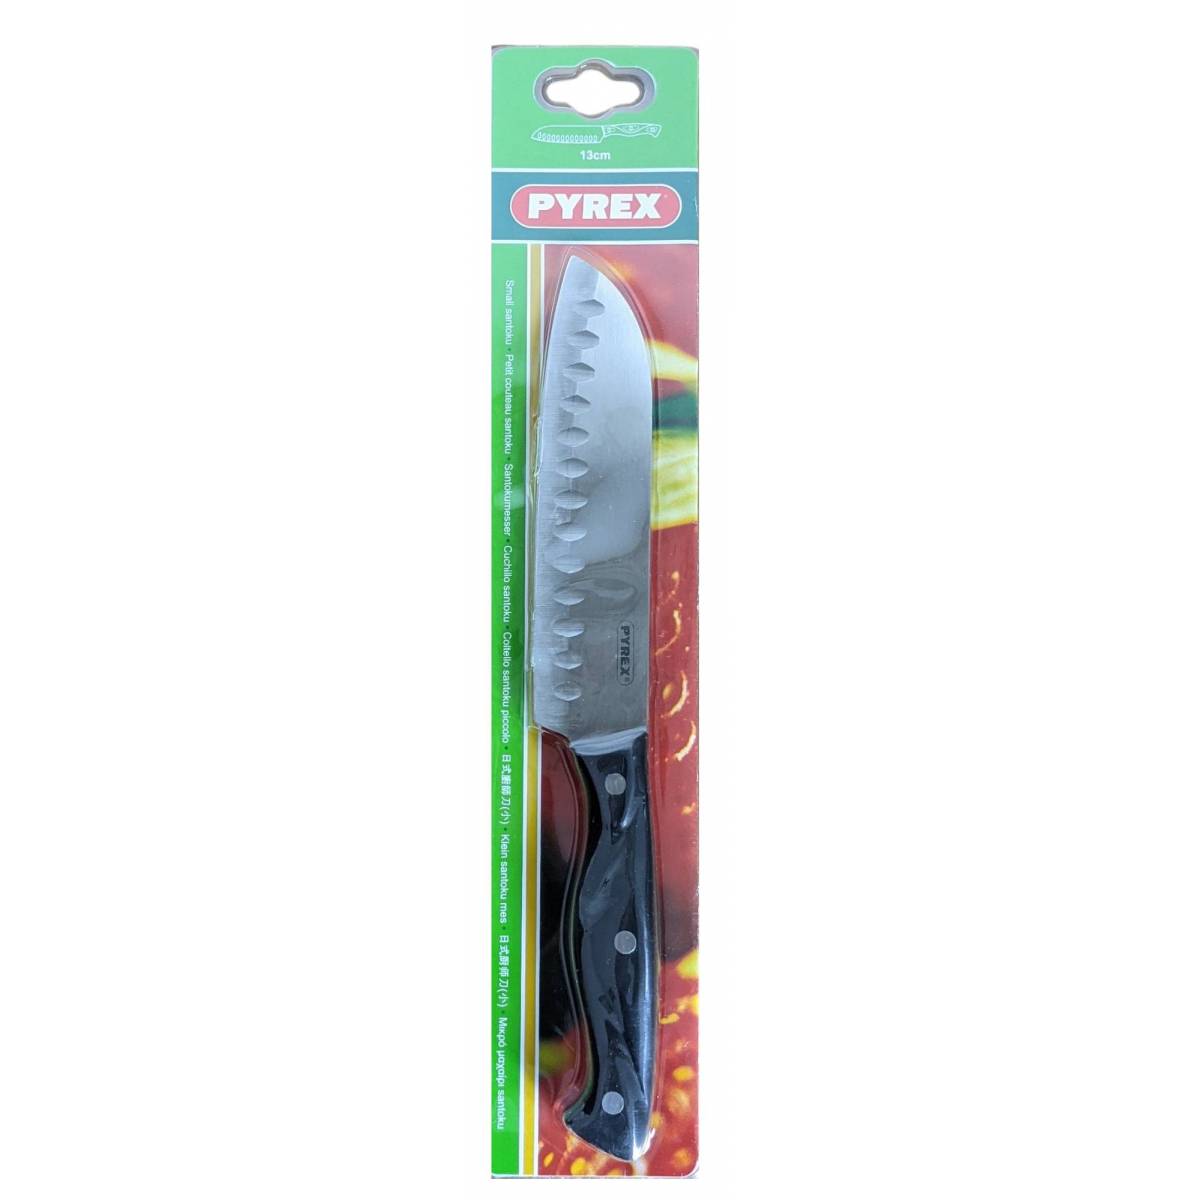 Petit Couteau Santoku Pyrex 13 cm